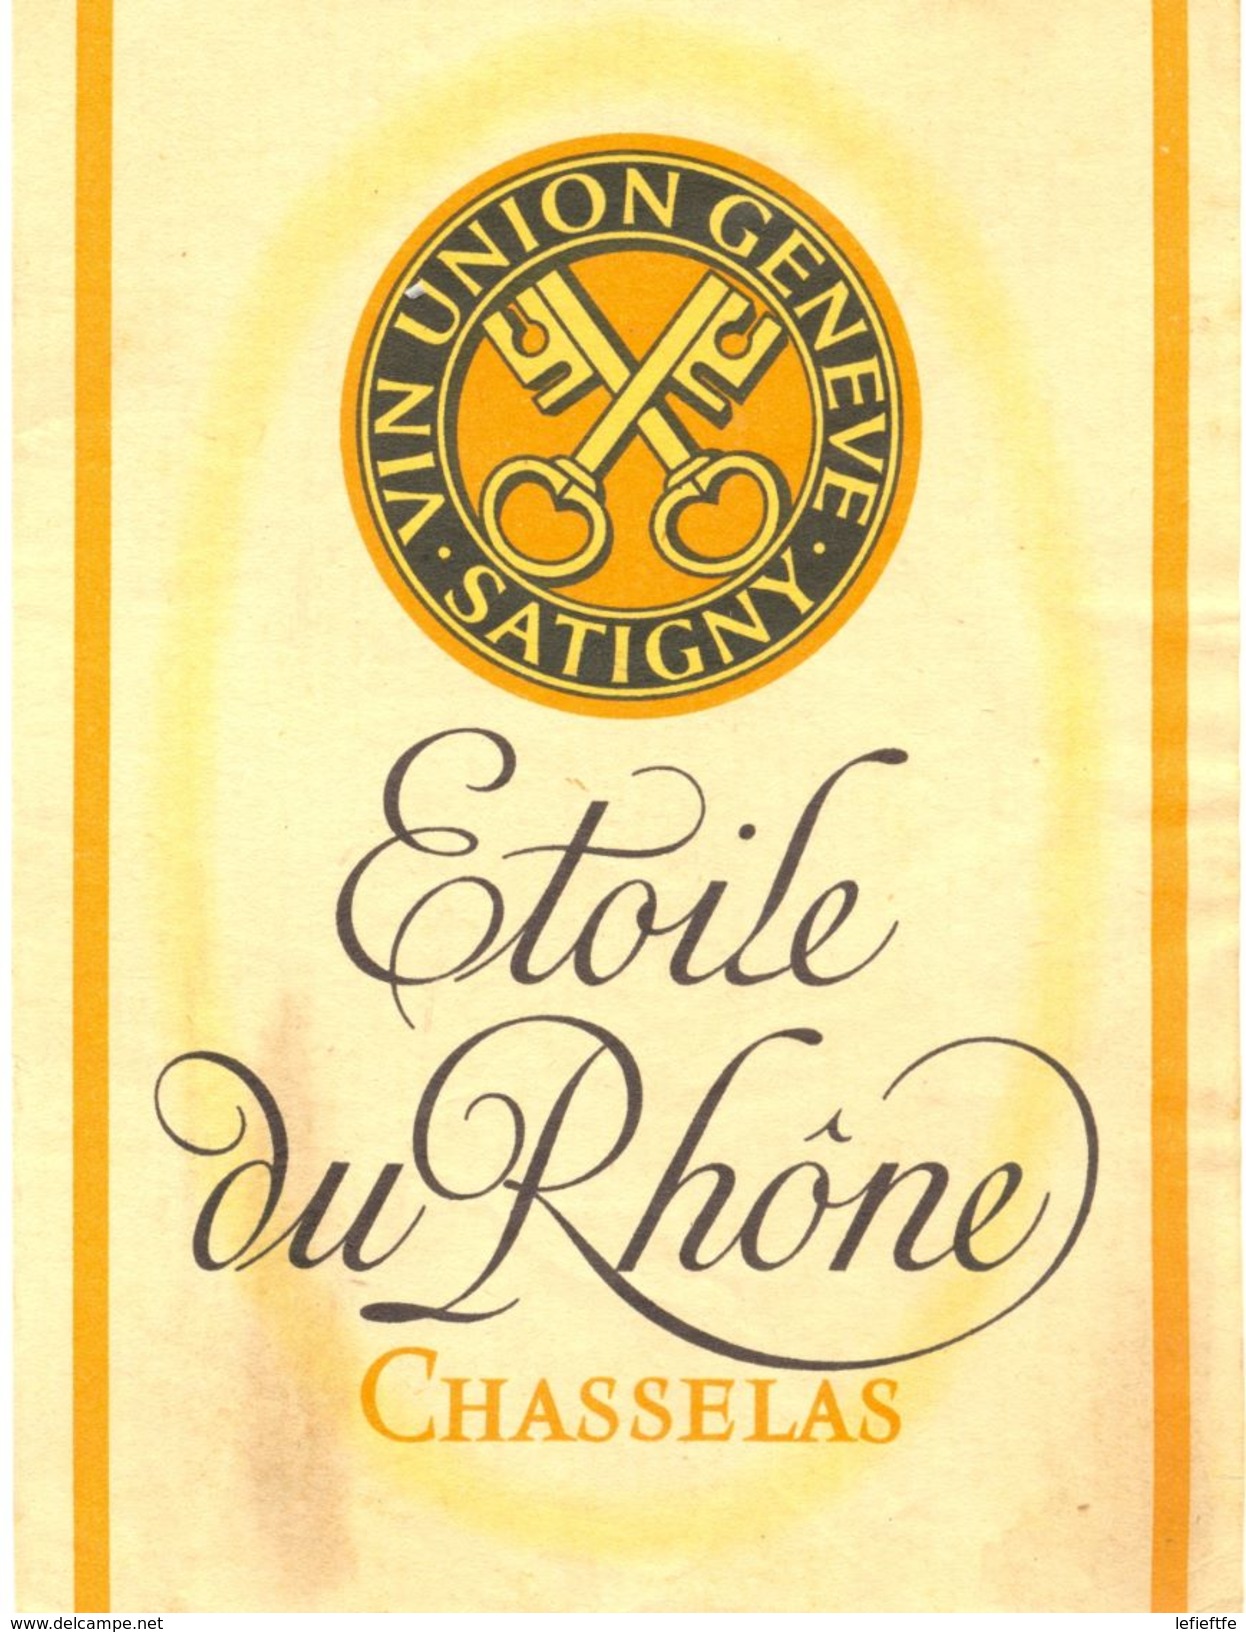 1518 - Suisse - Etoile Du Rhône - Chasselas - Vin Union Genève Satigny - White Wines